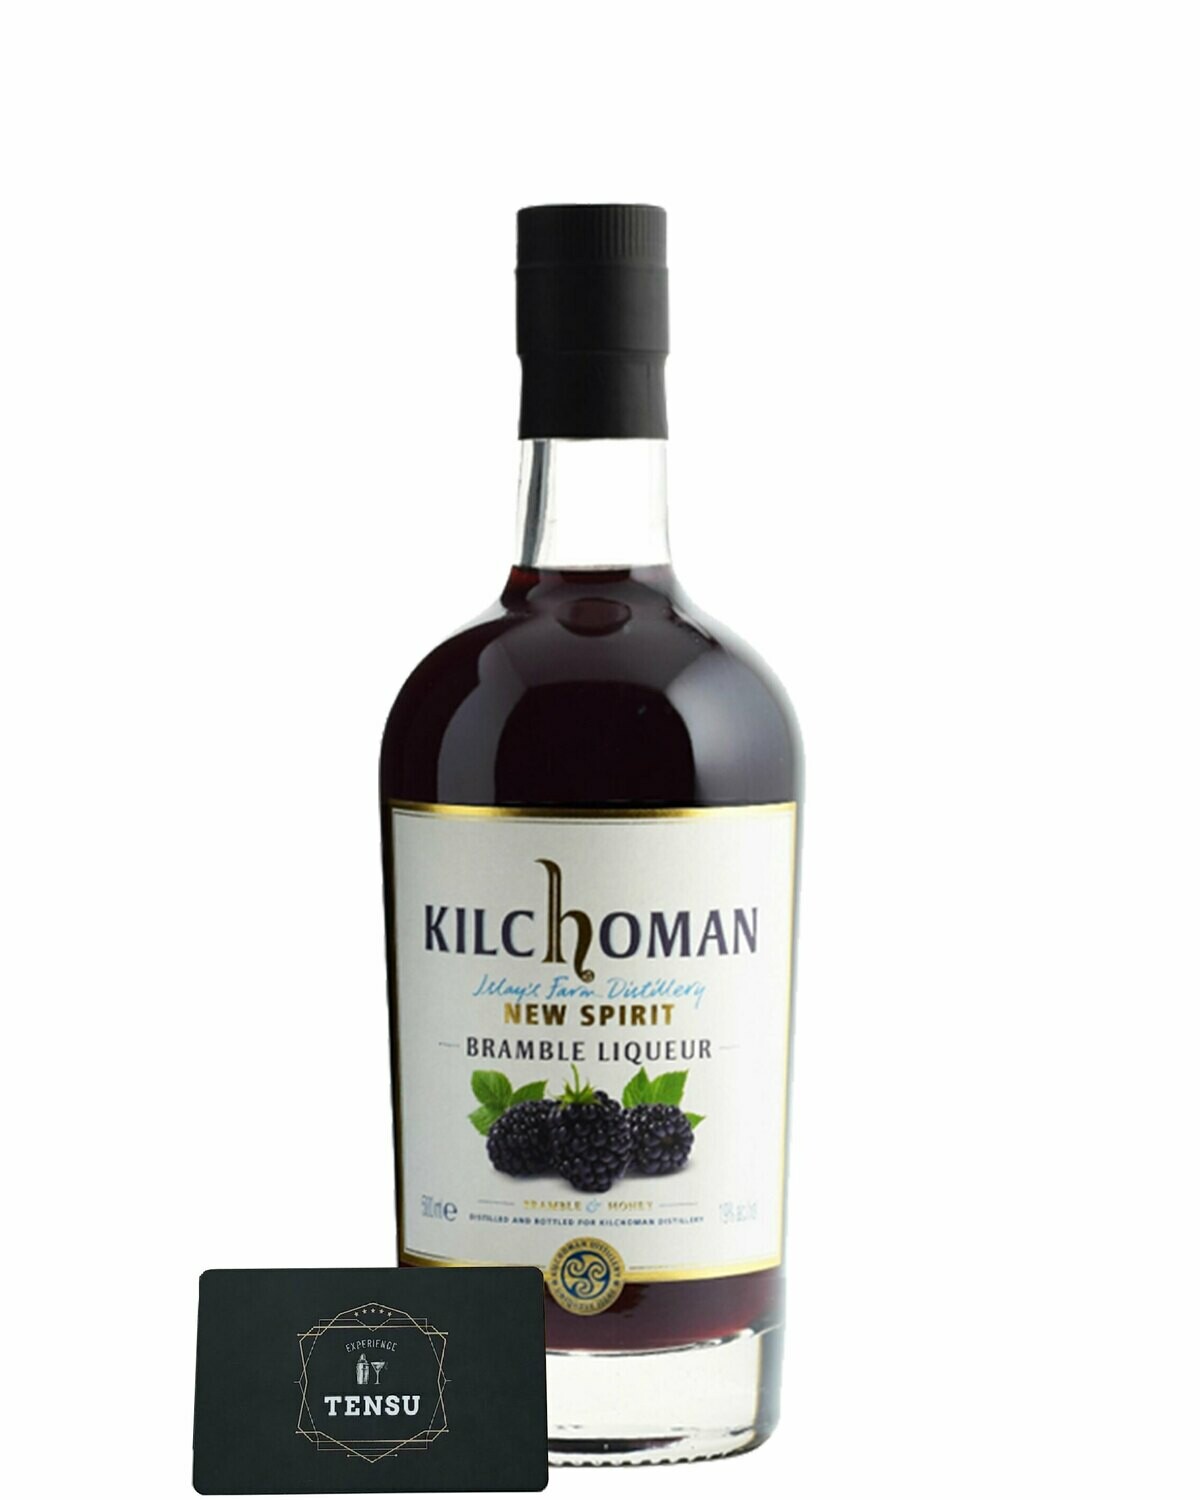 Kilchoman Bramble Liqueur 19.0% (0.50 Liter)